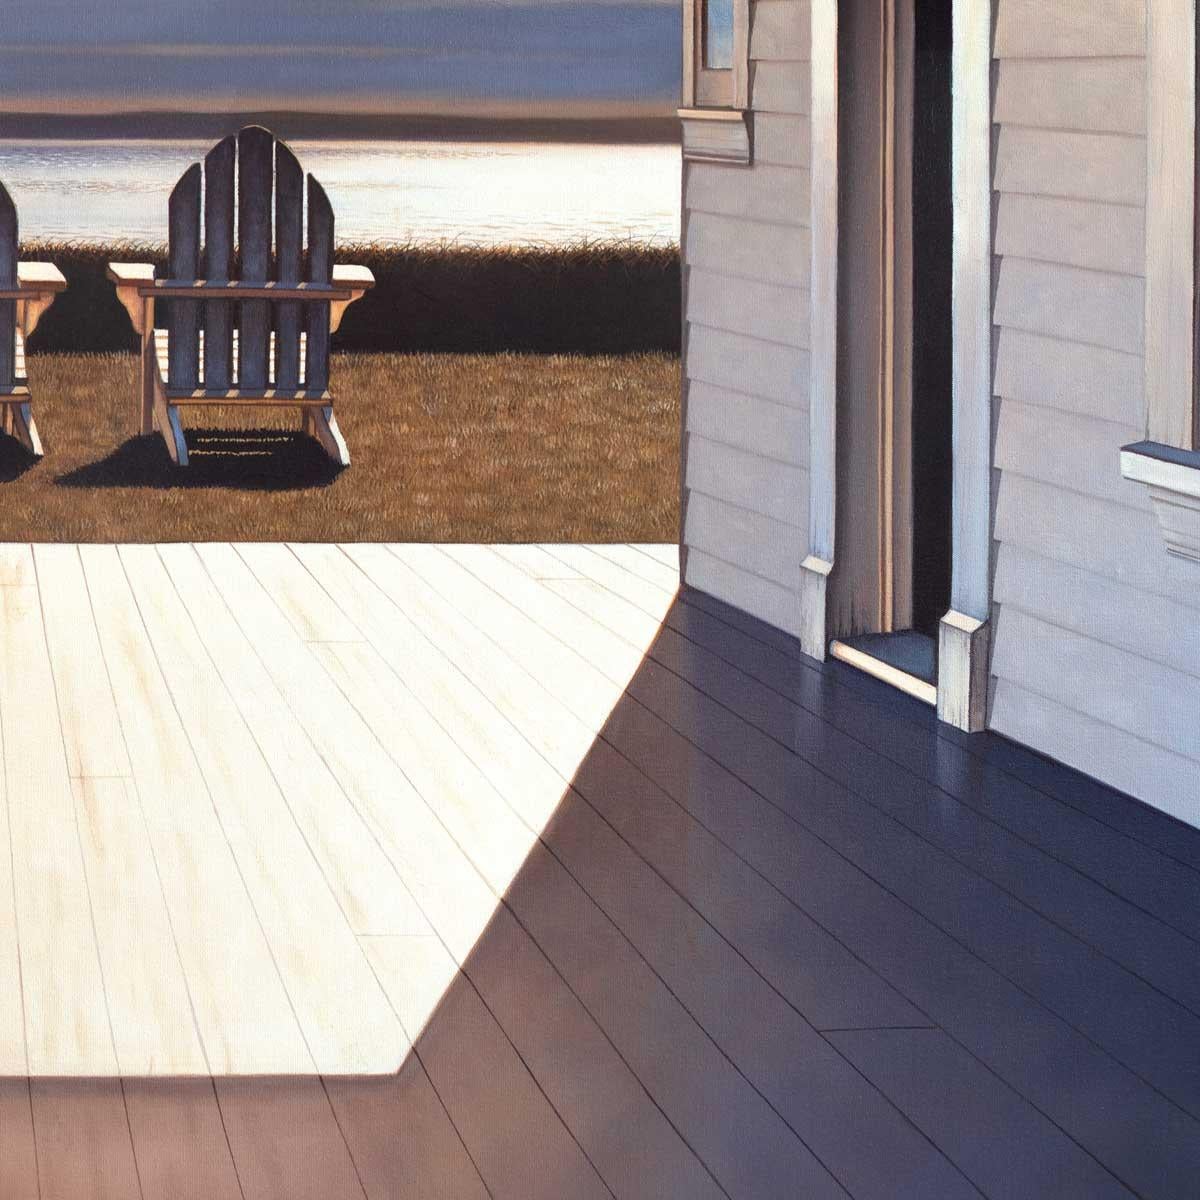 Dieser zeitgenössische realistische Druck in limitierter Auflage von Daniel Pollera ist aus der Perspektive eines Blicks von einer Veranda eines Strandhauses auf ein Gewässer dargestellt. Zwei Adirondack-Stühle stehen auf dem Rasen zwischen dem Rand